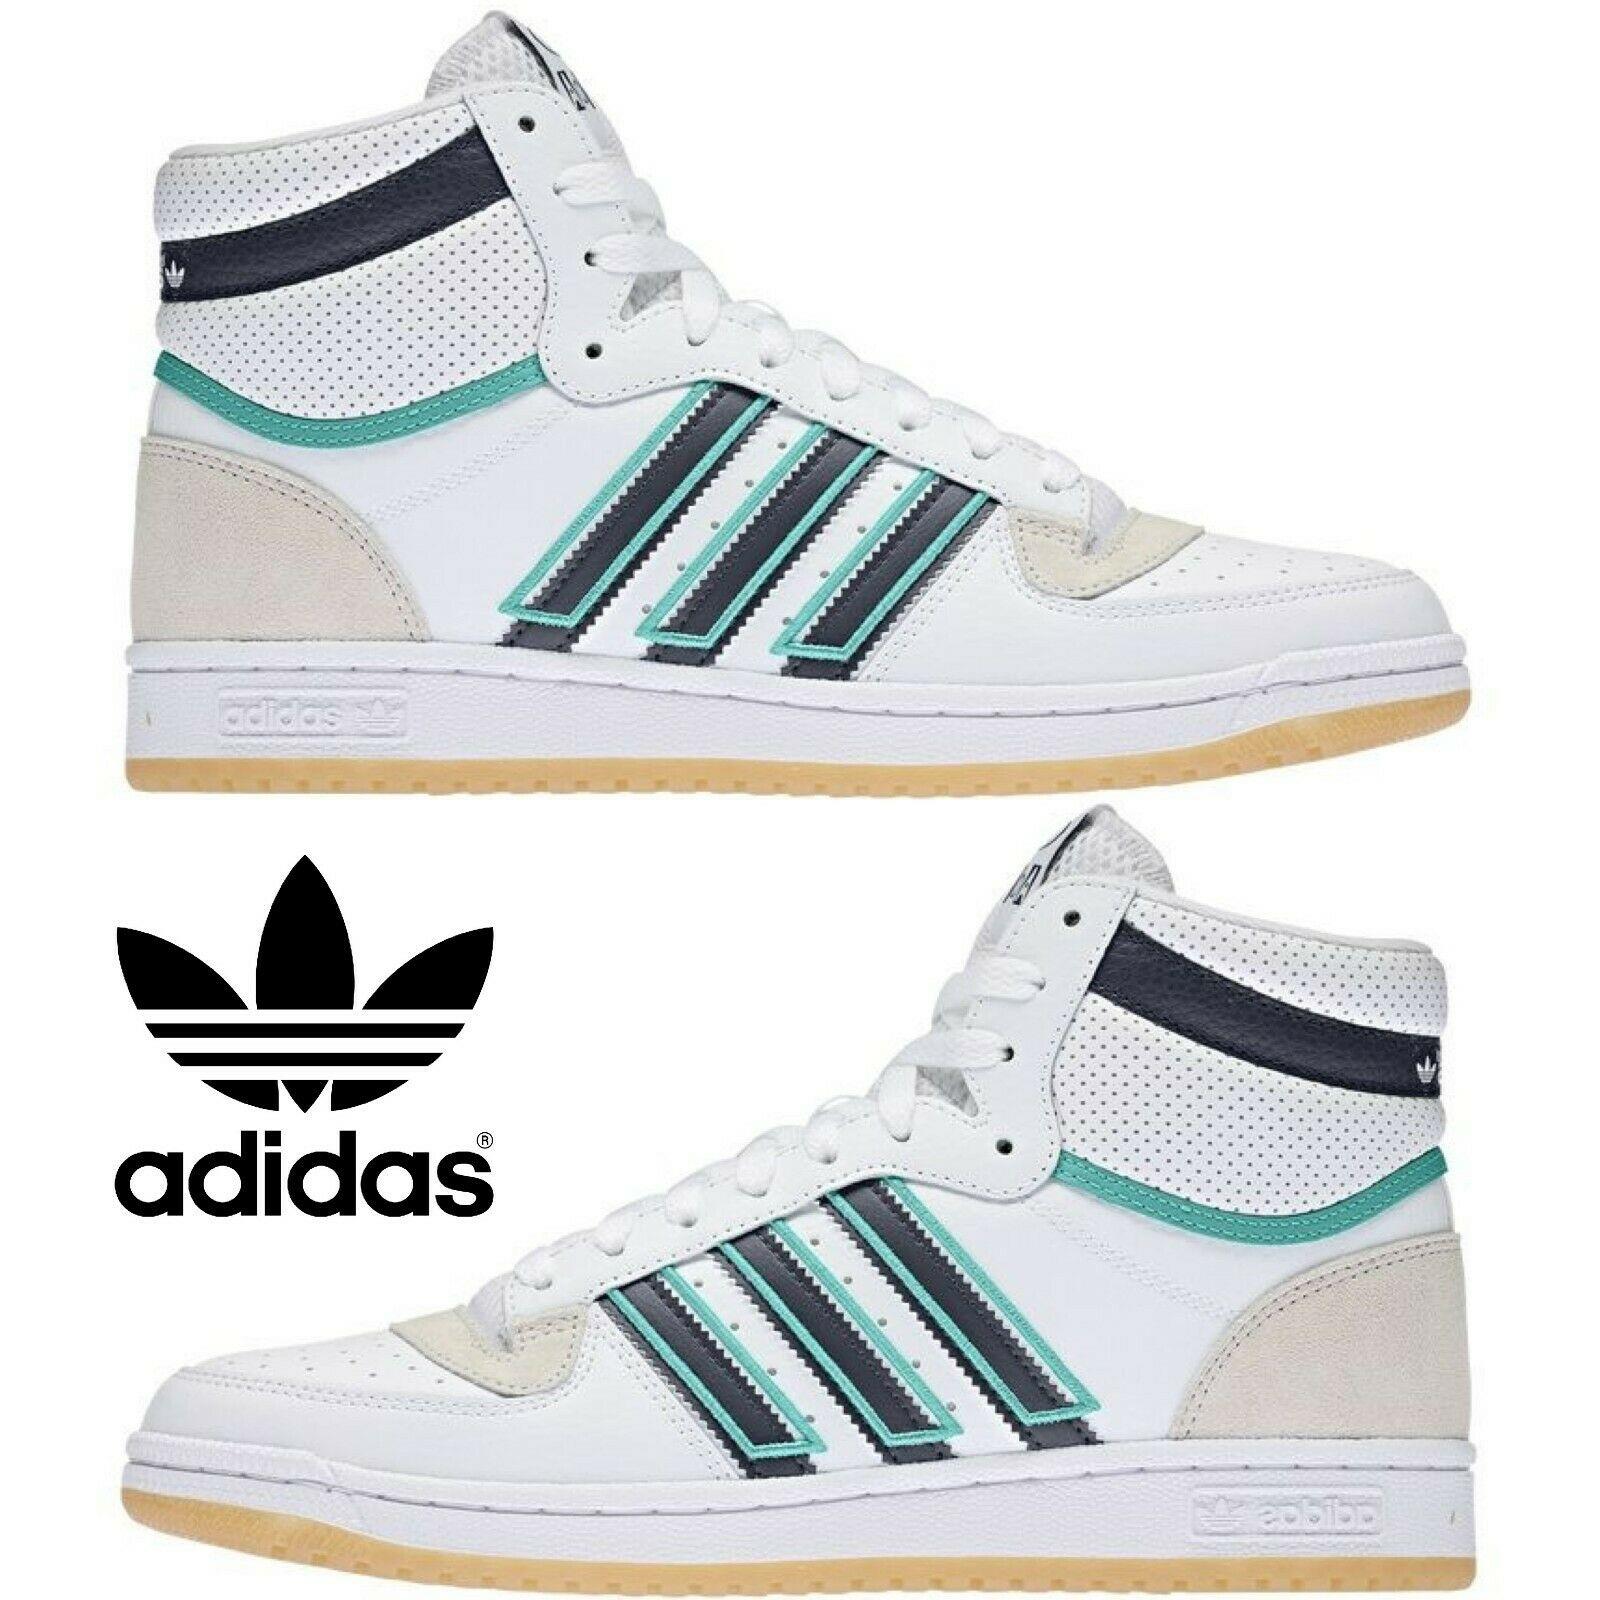 Adidas Originals Top Ten Hi Men`s Sneakers Comfort Casual Shoes White Navy Mint